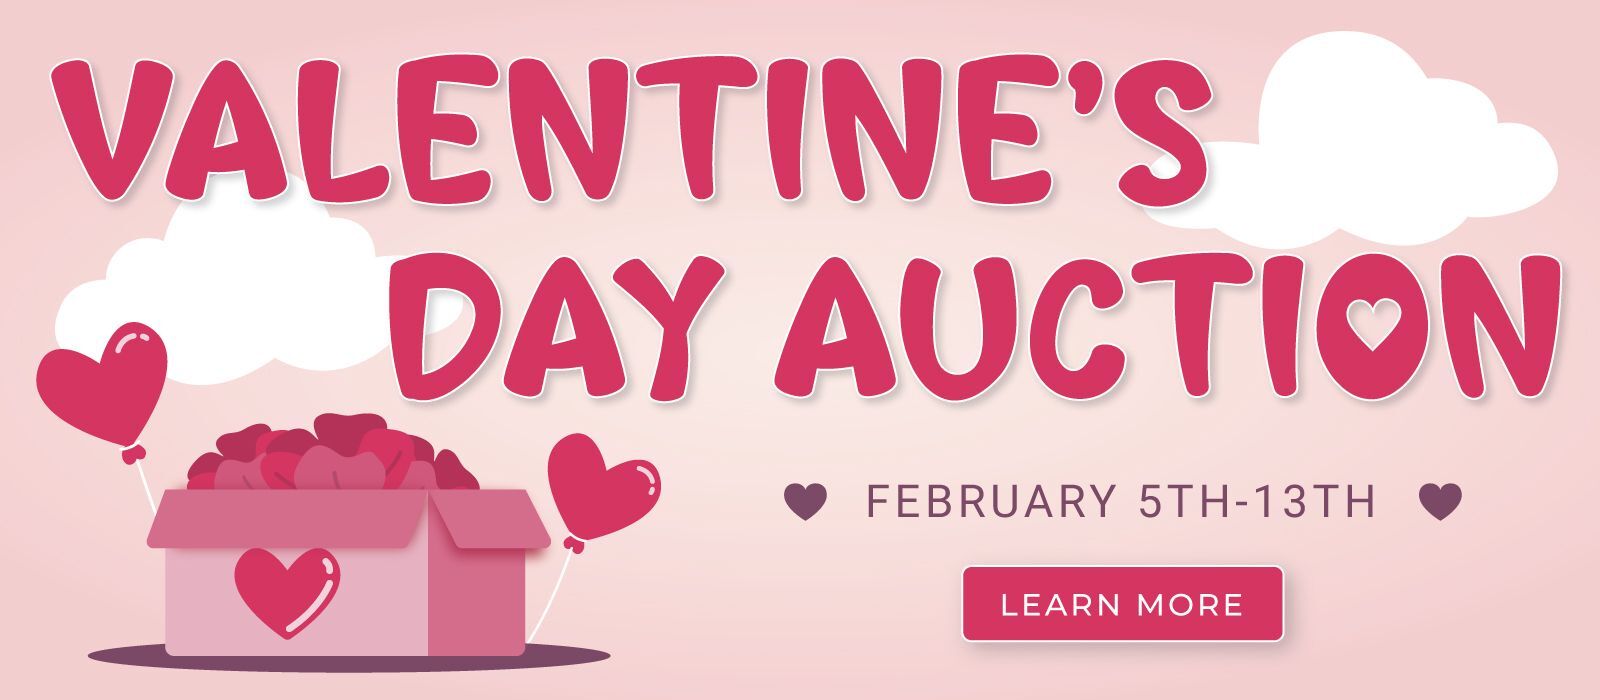 KCSC Valentines Day Auction